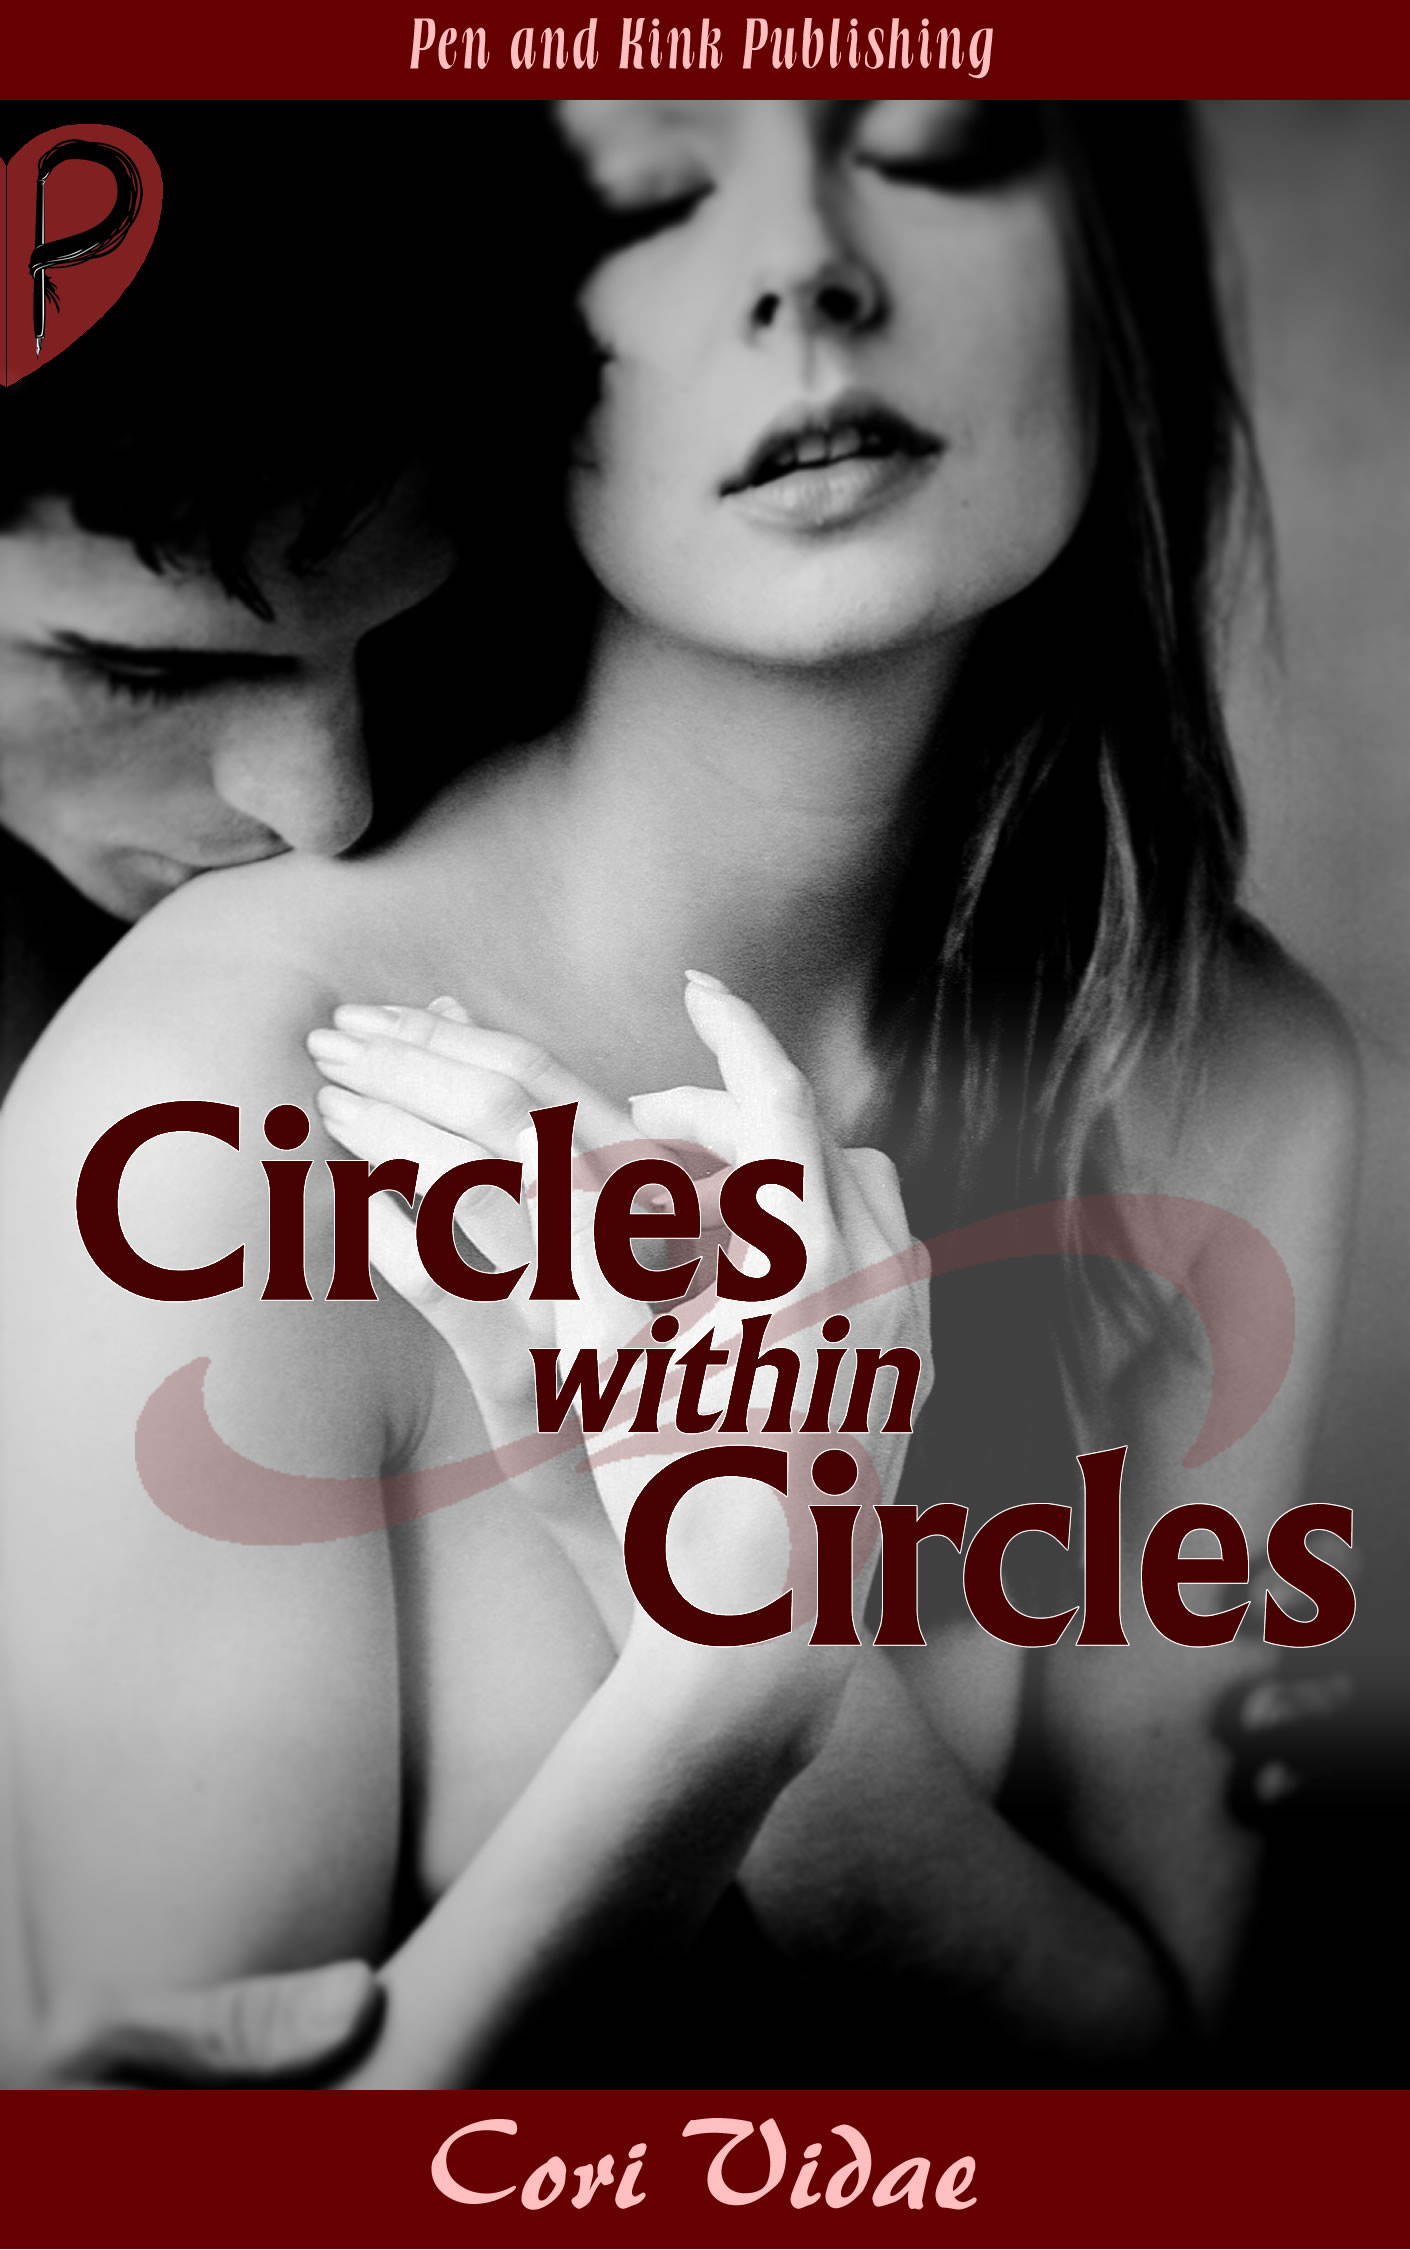 Circles Within Circles